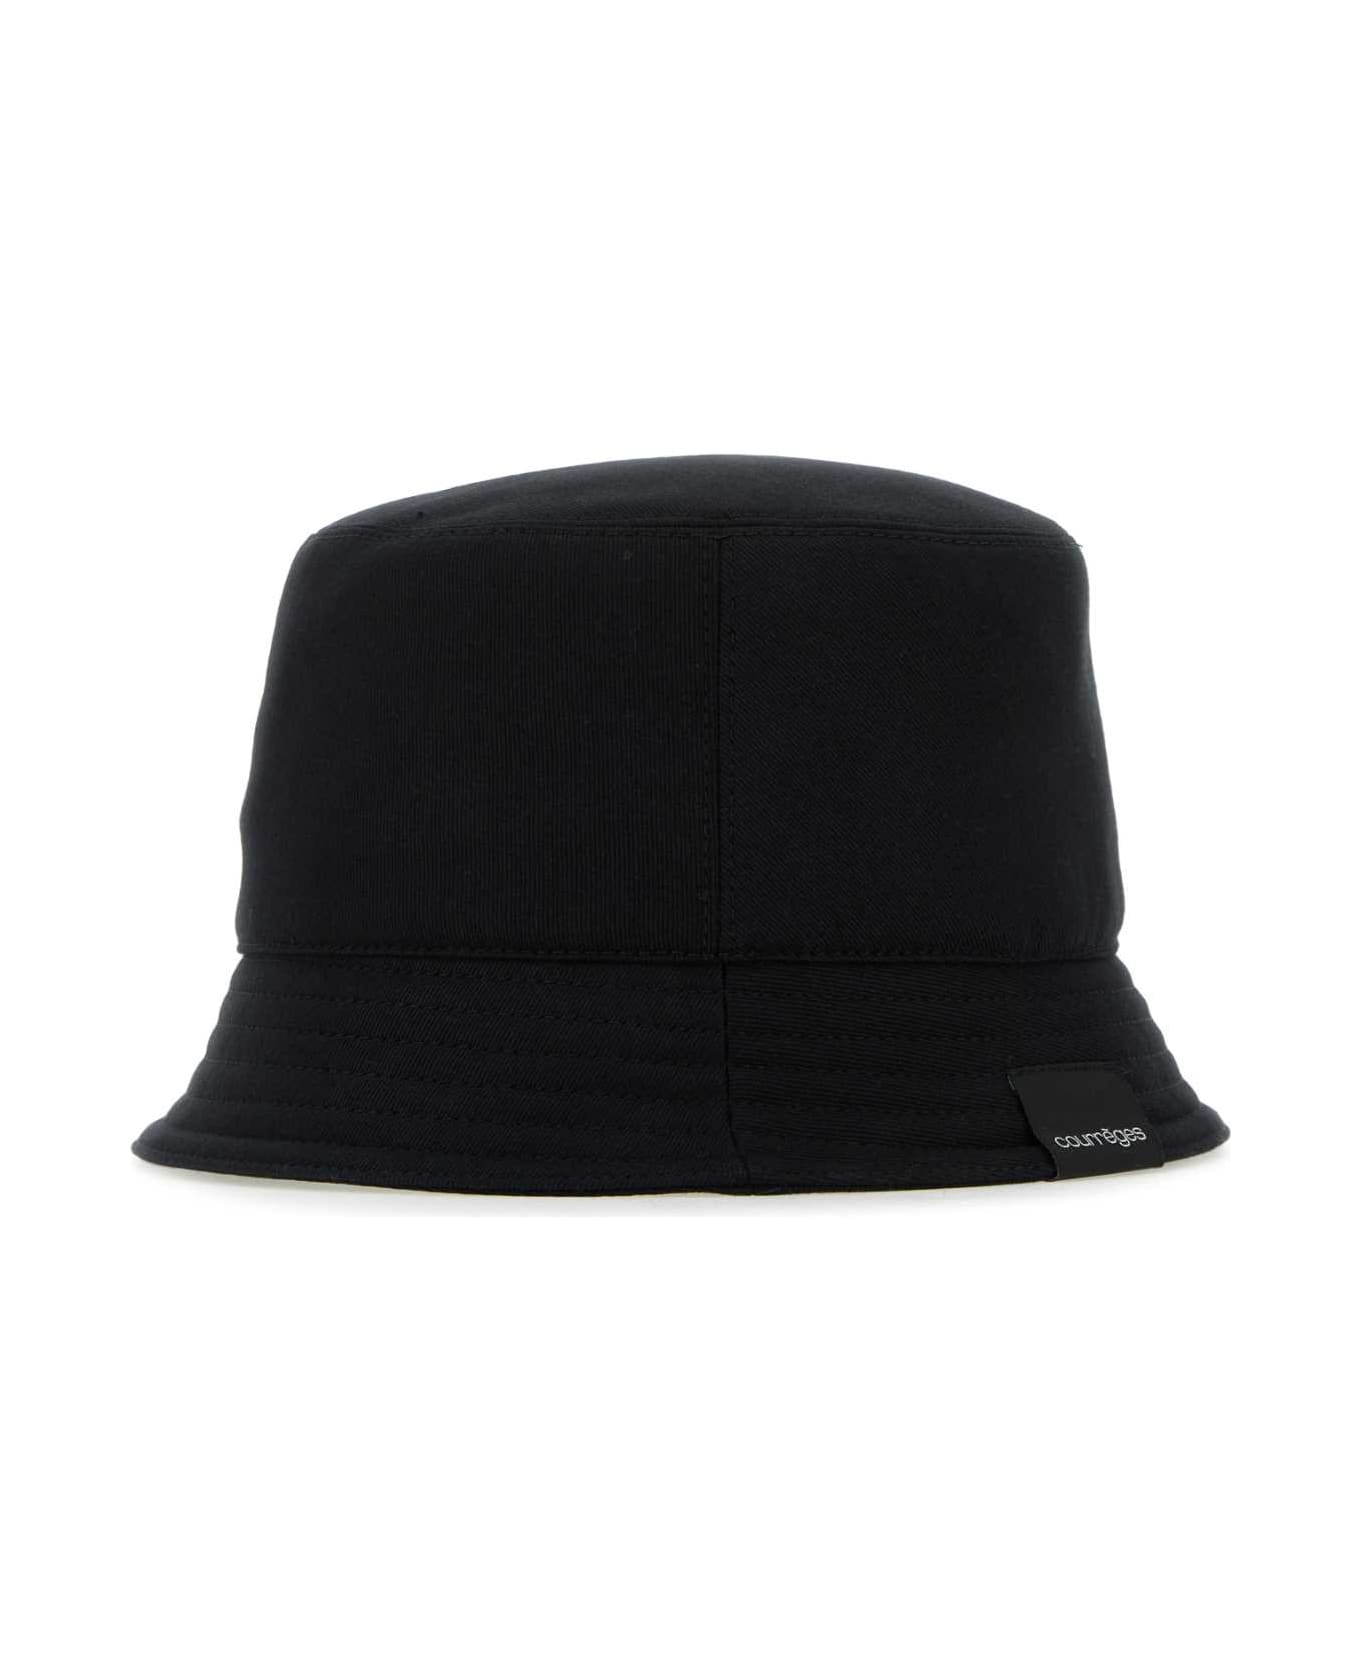 Courrèges Black Cotton Bucket Hat - Black